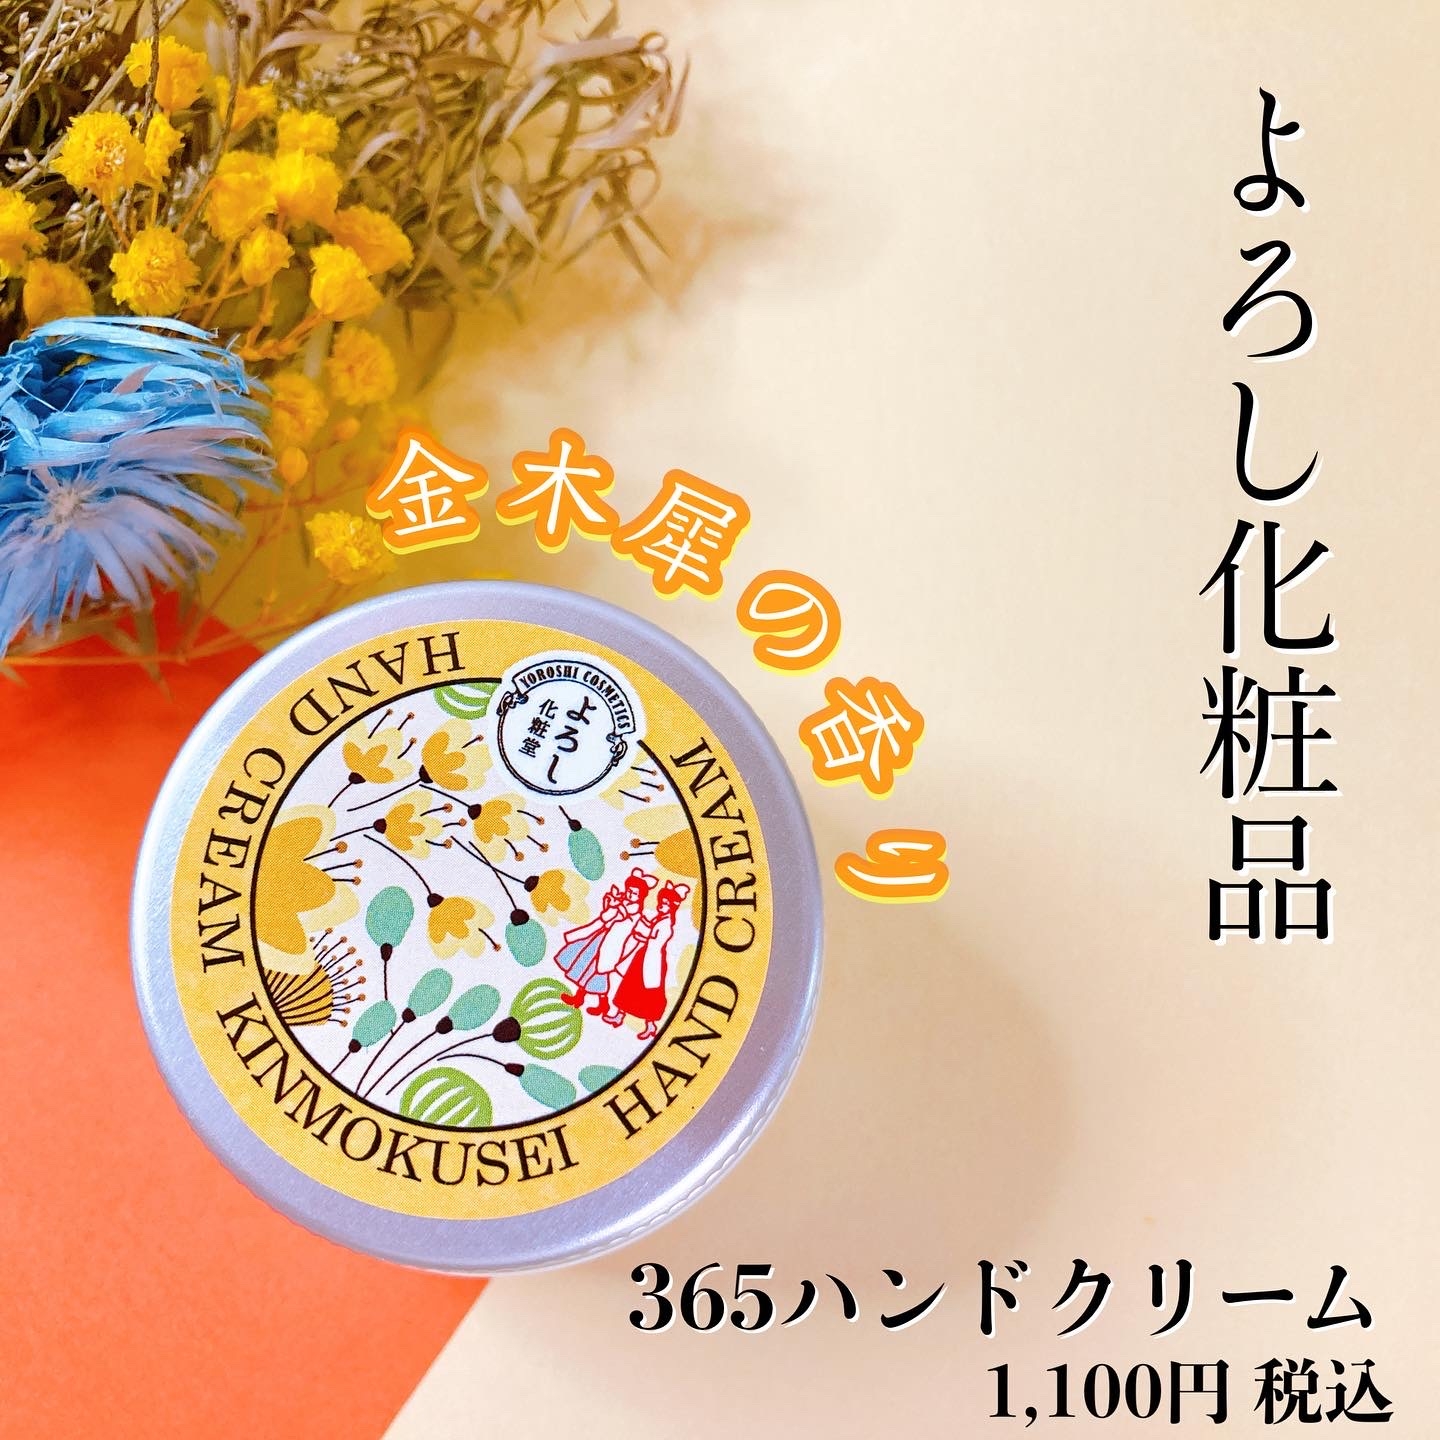 よろし化粧品ハンドクリーム金木犀の香り 1100円を使ったメグさんのクチコミ画像1